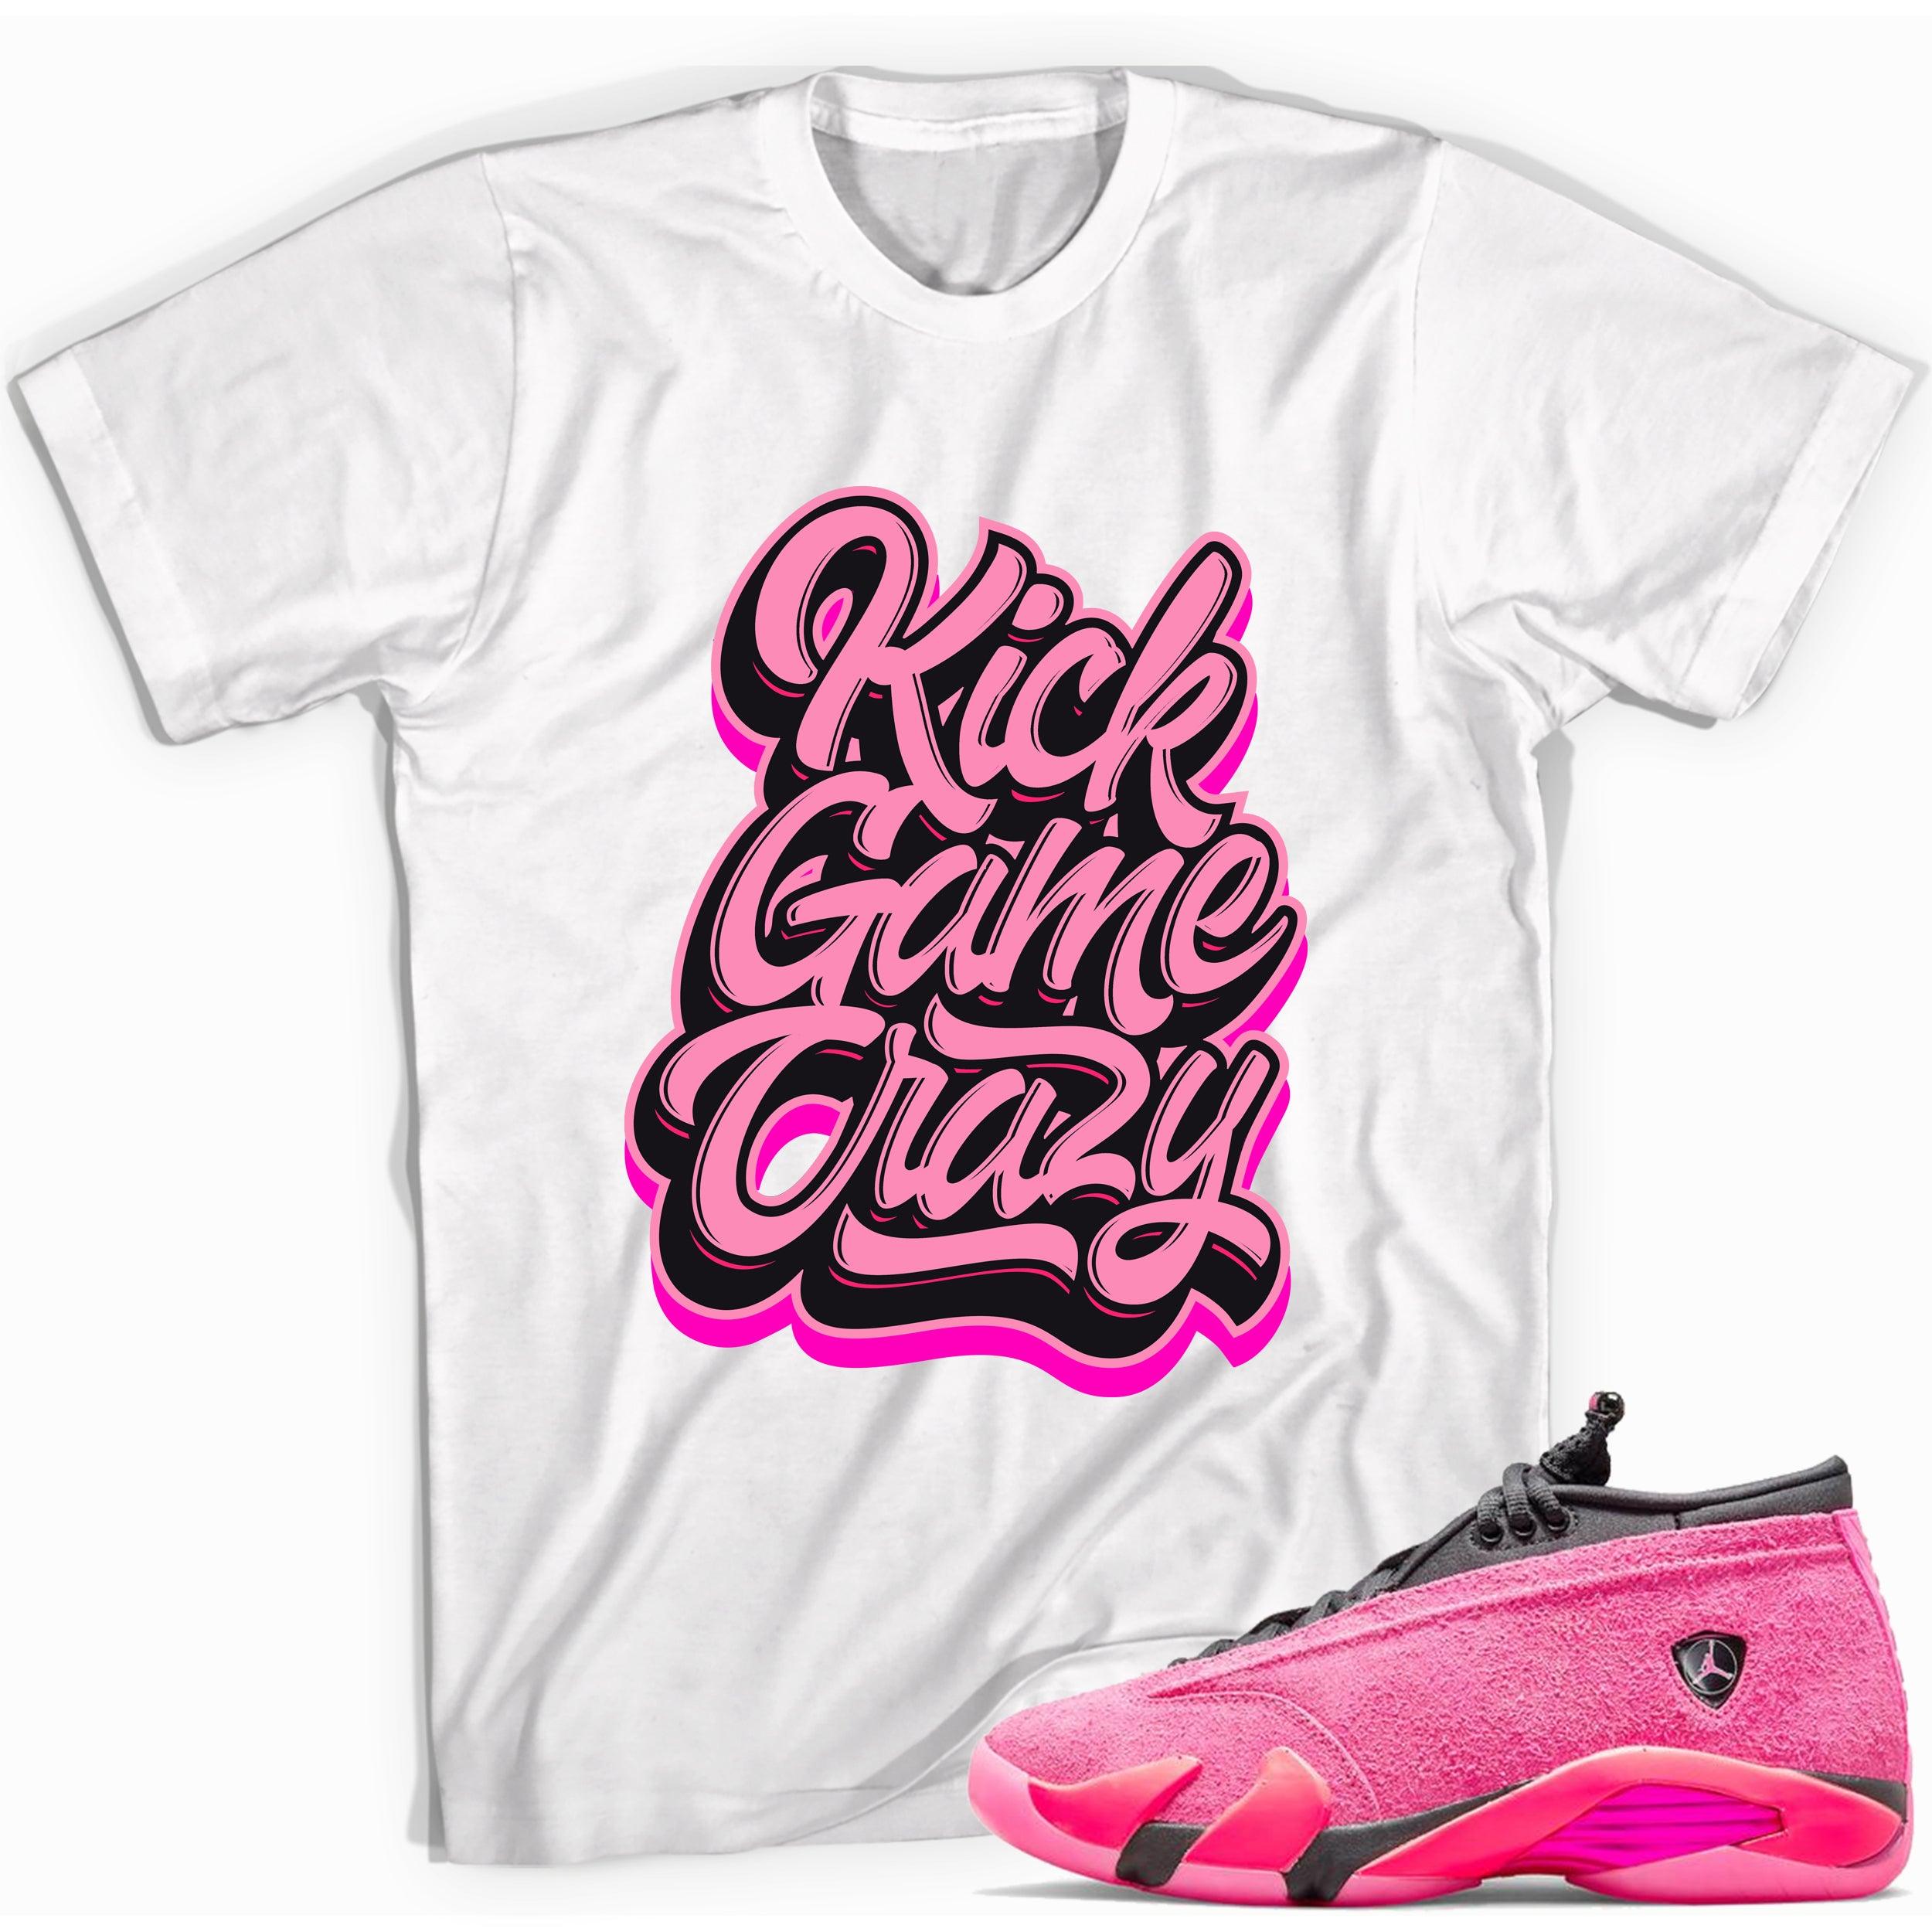 Kick Game Crazy Shirt AJ 14 Low Shocking Pink photo